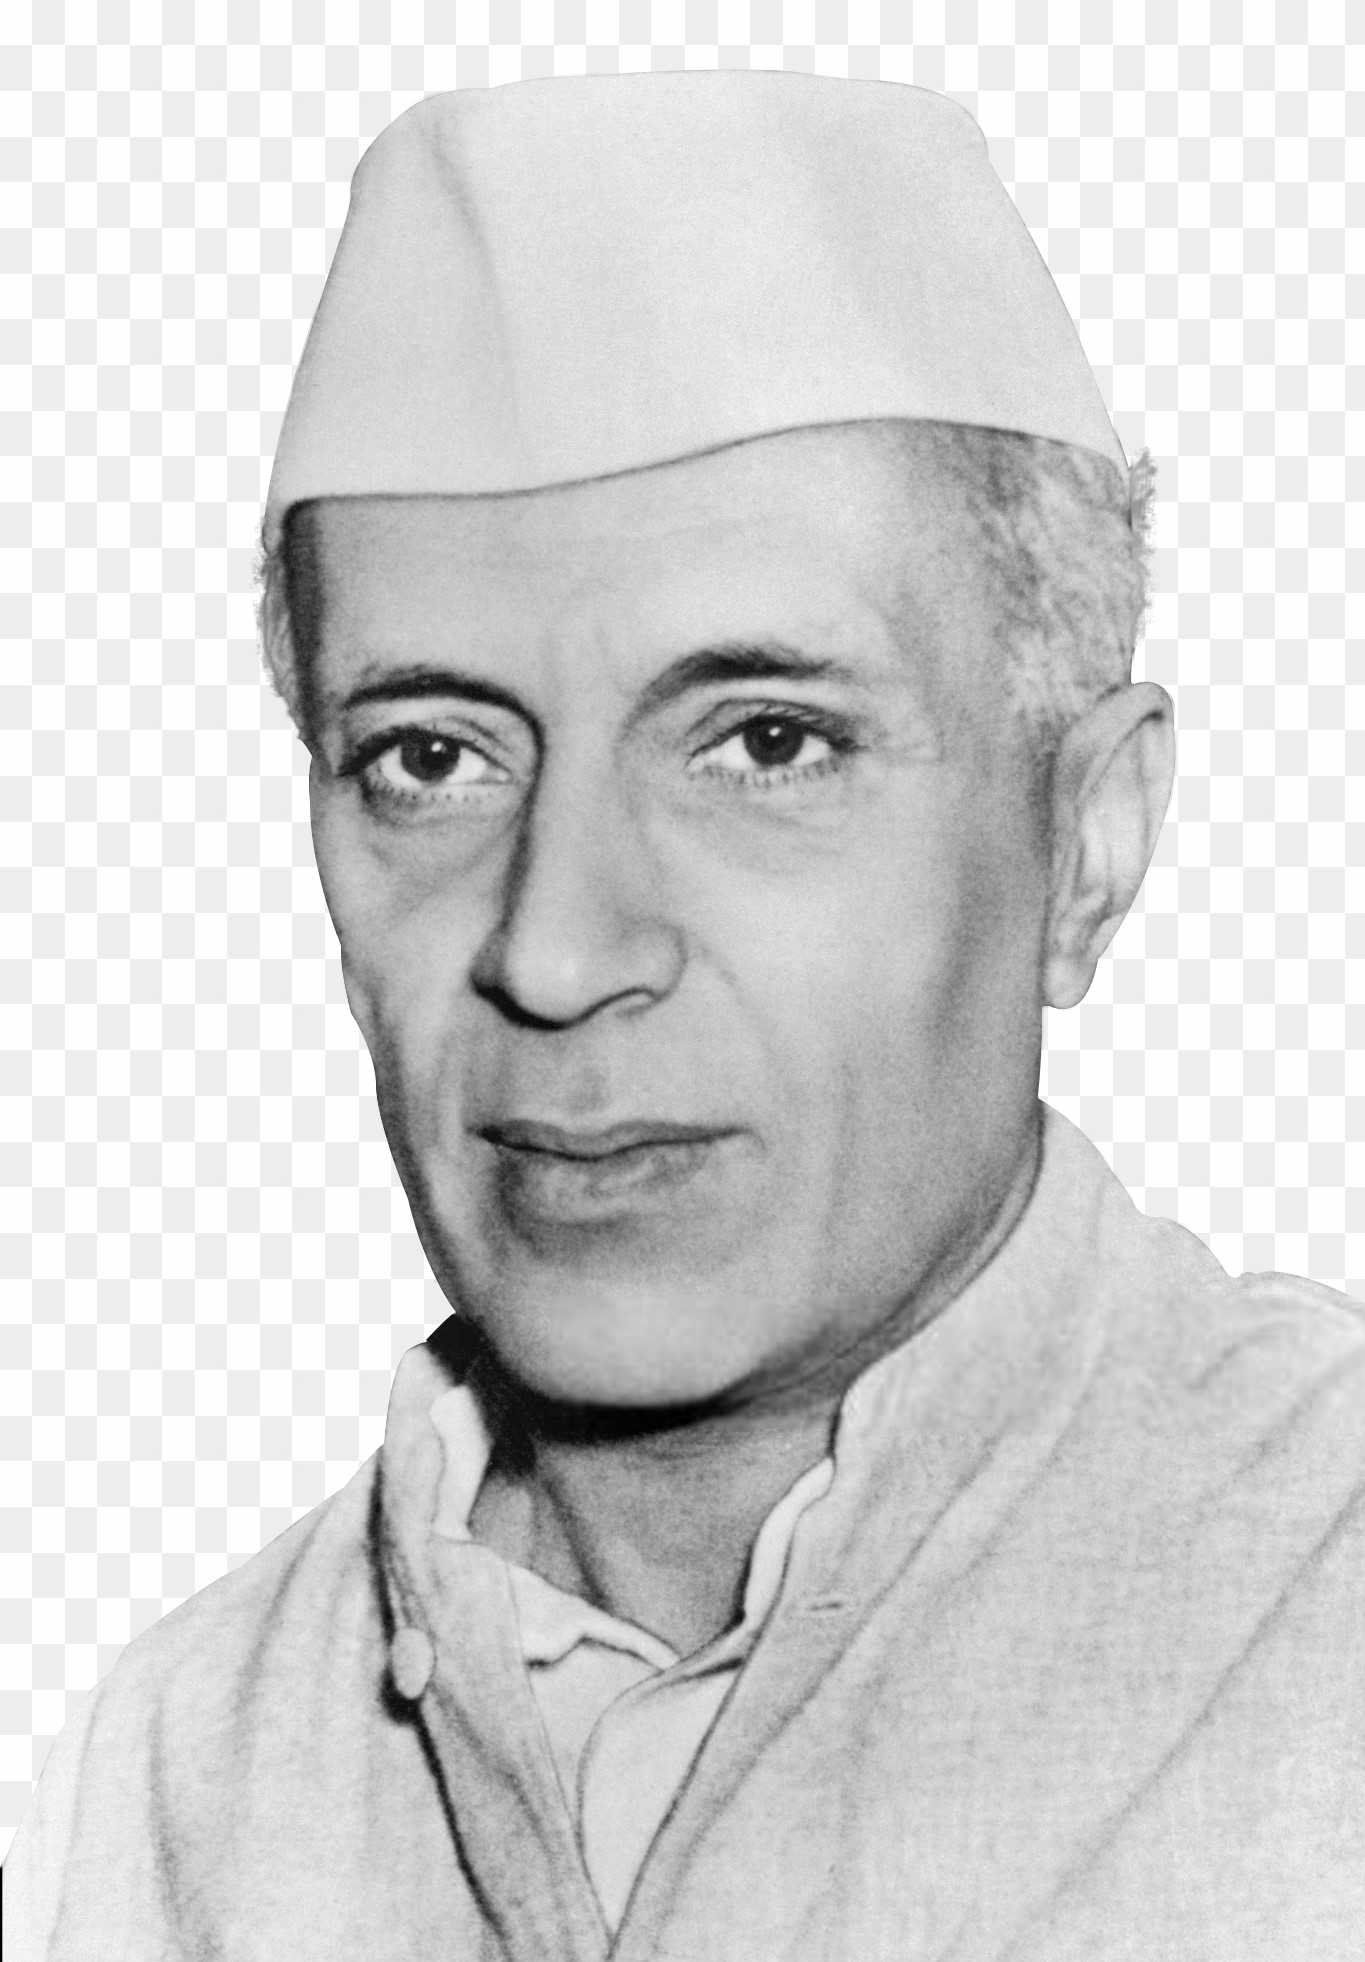 Pandit Jawaharlal Nehru hd photo png download 